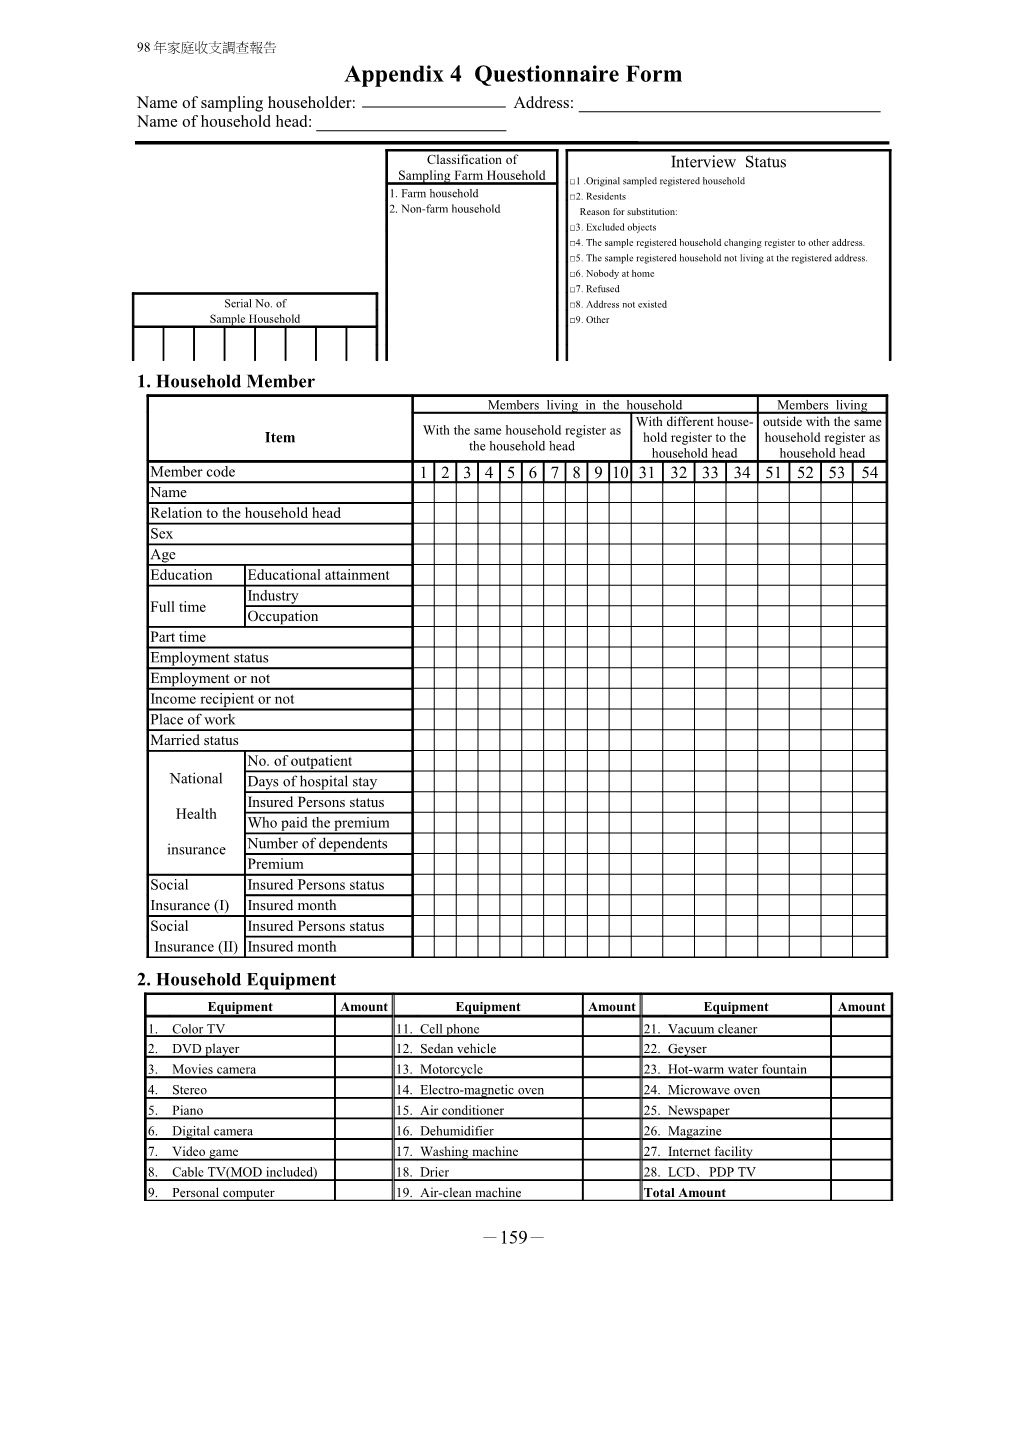 Appendix 4 Questionnaire Form